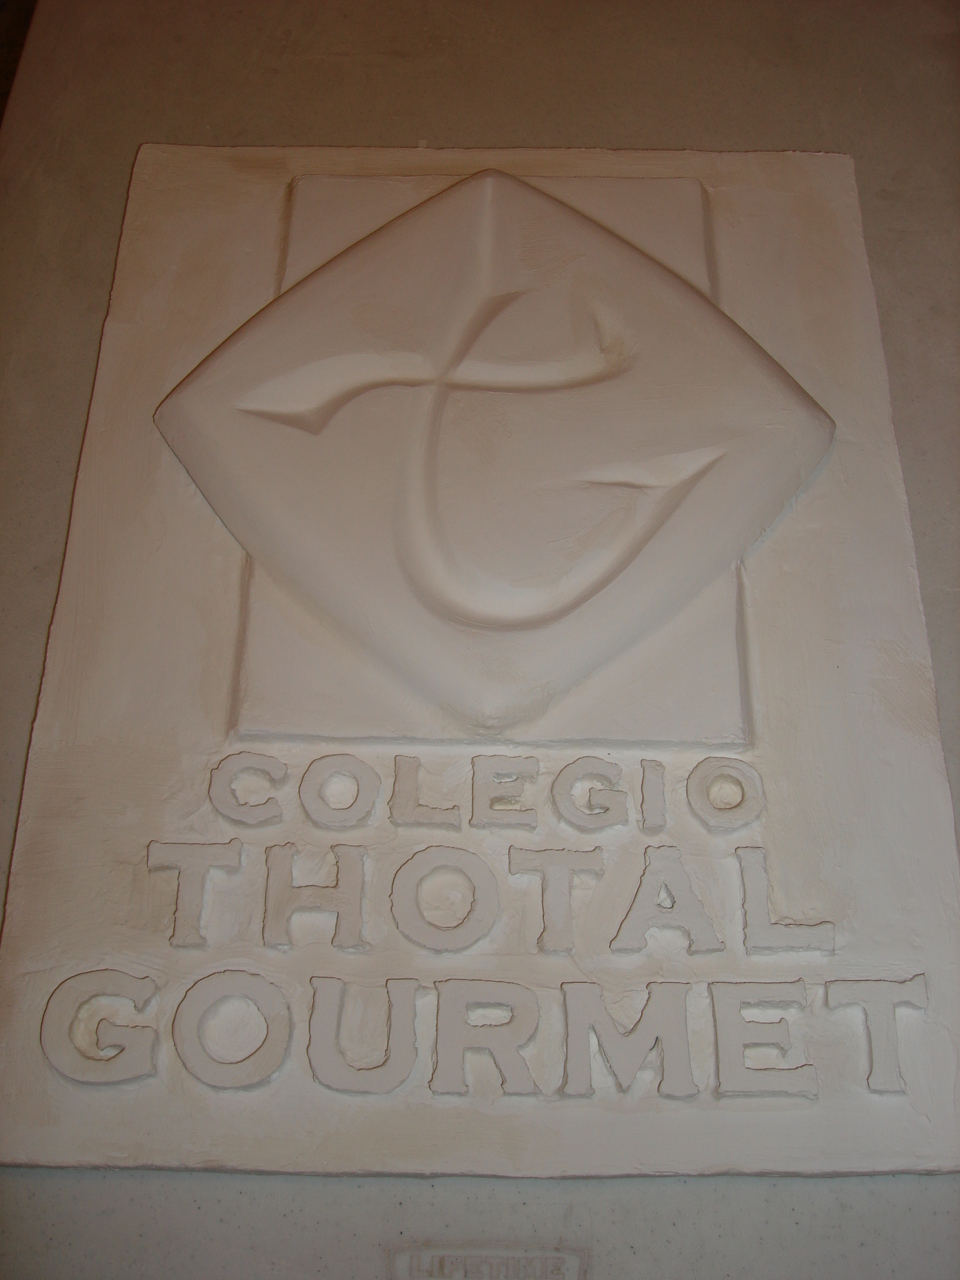 [Logo+Colegio+Thotal+Gourmet.JPG]